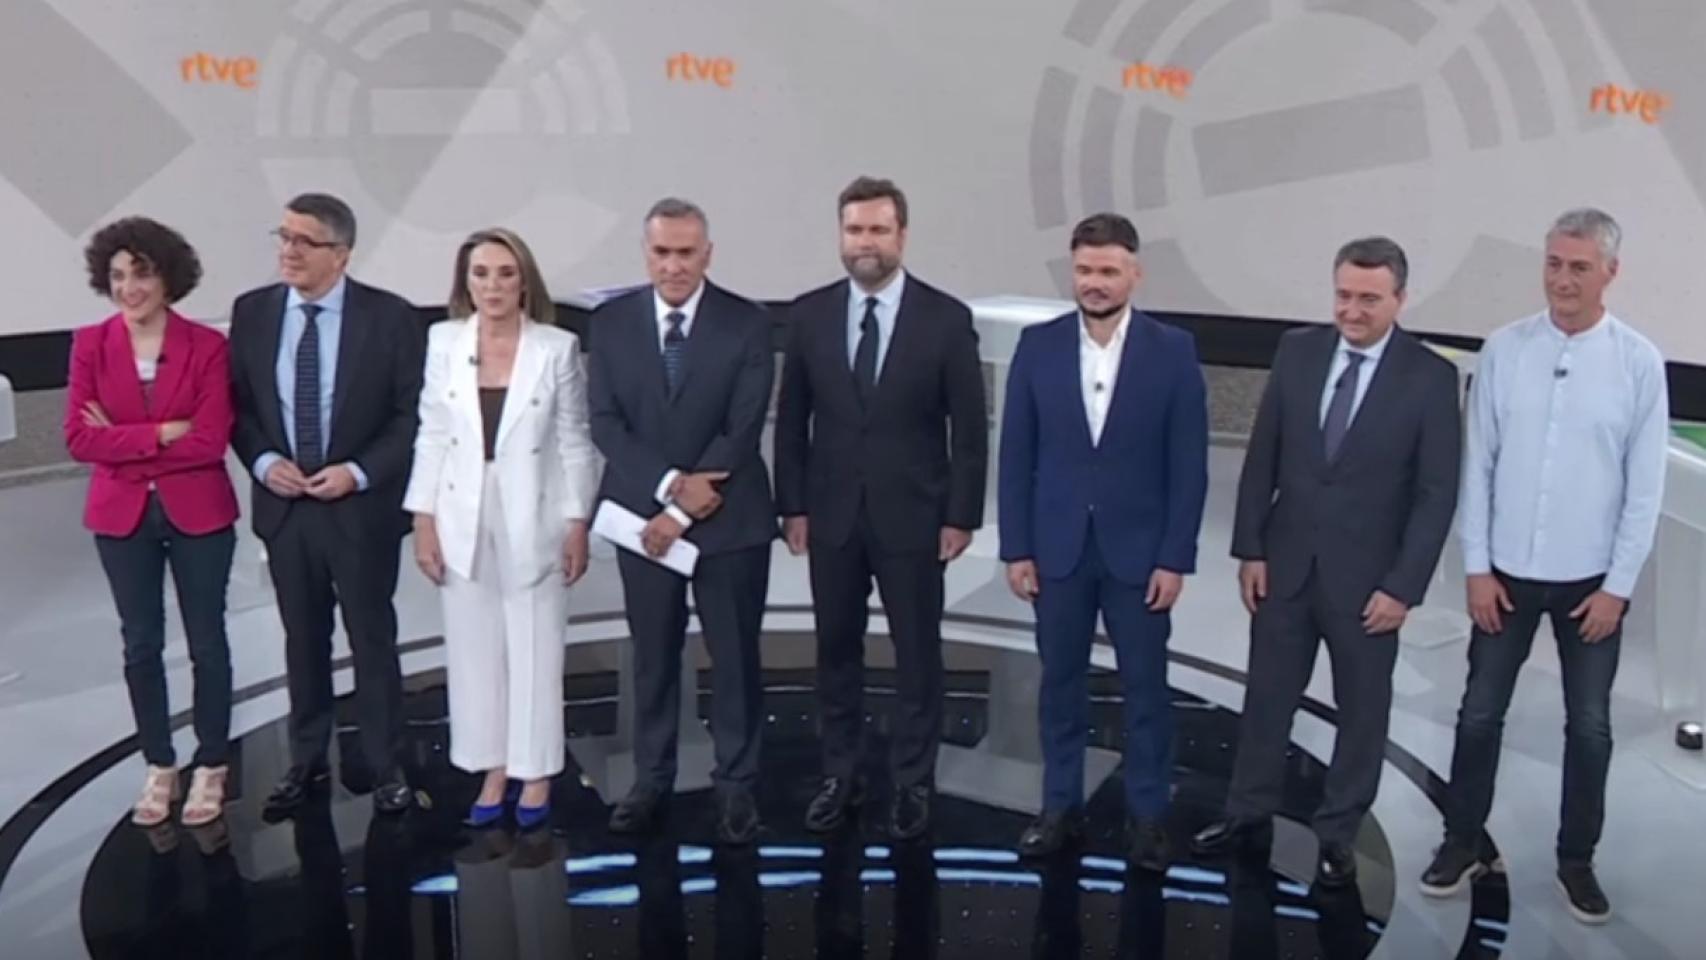 Los siete candidatos del debate electoral junto con el presentador